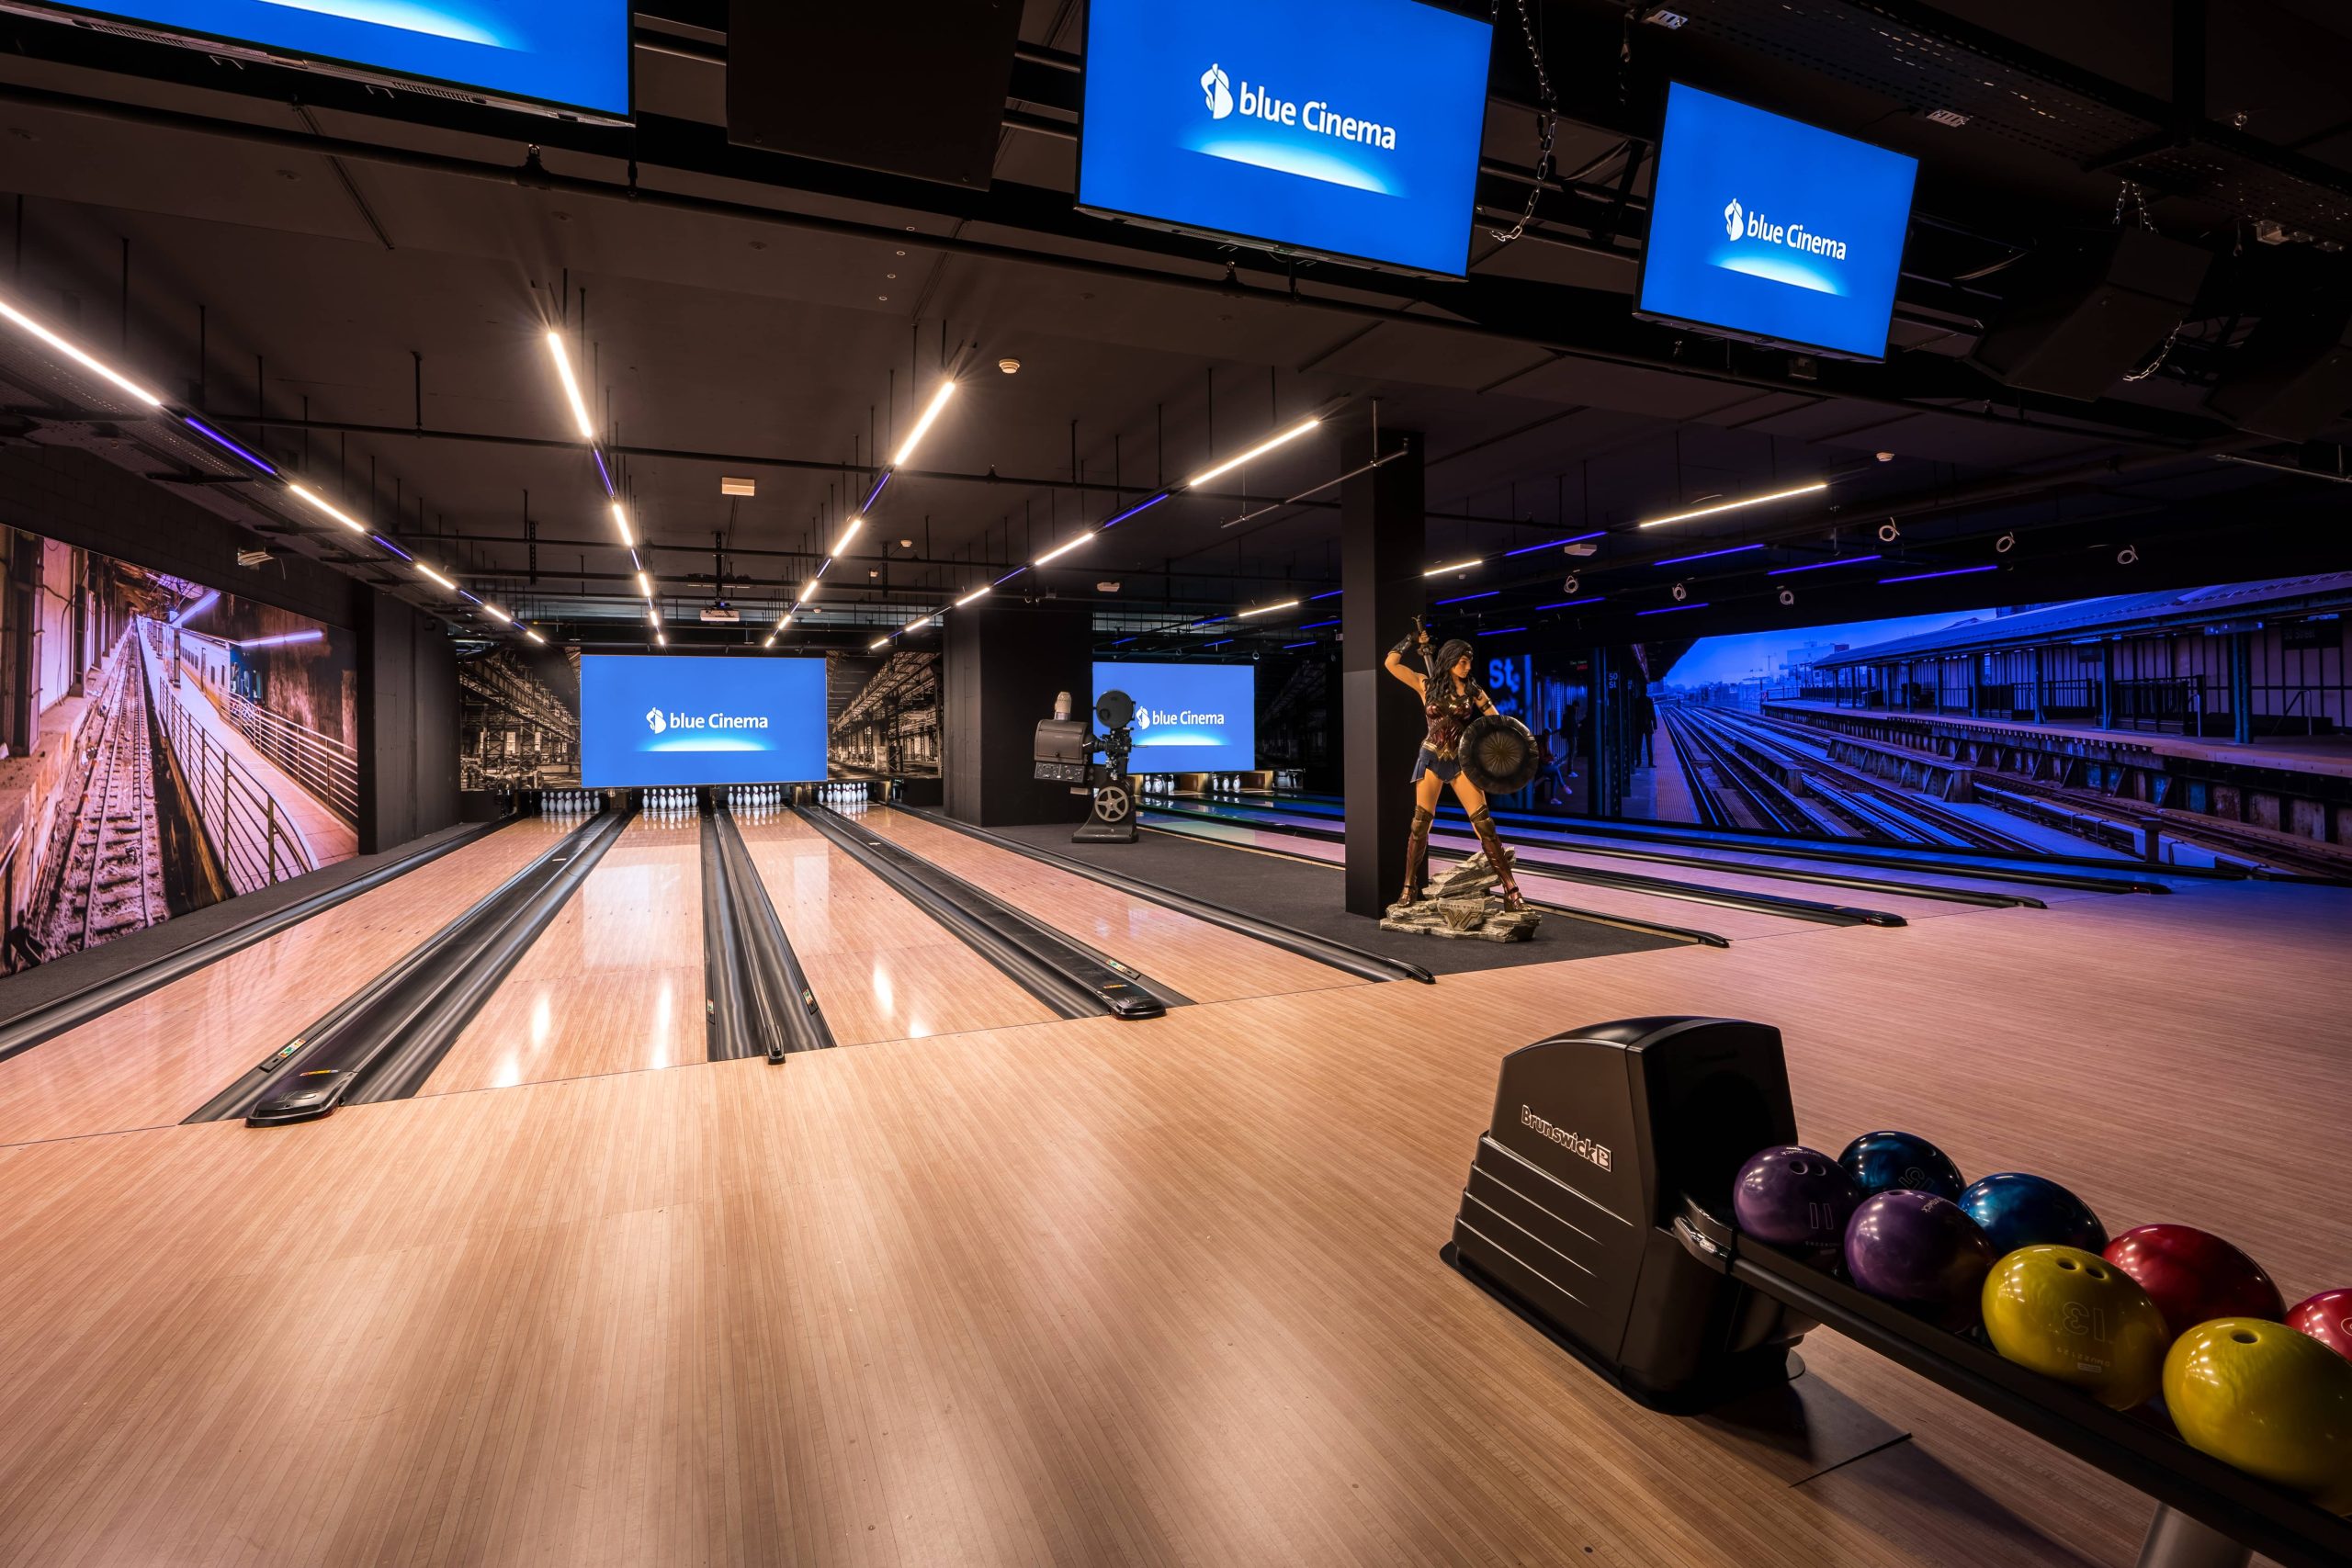 Piste de bowling moderne chez blue Cinema avec des allées lumineuses et une atmosphère élégante.